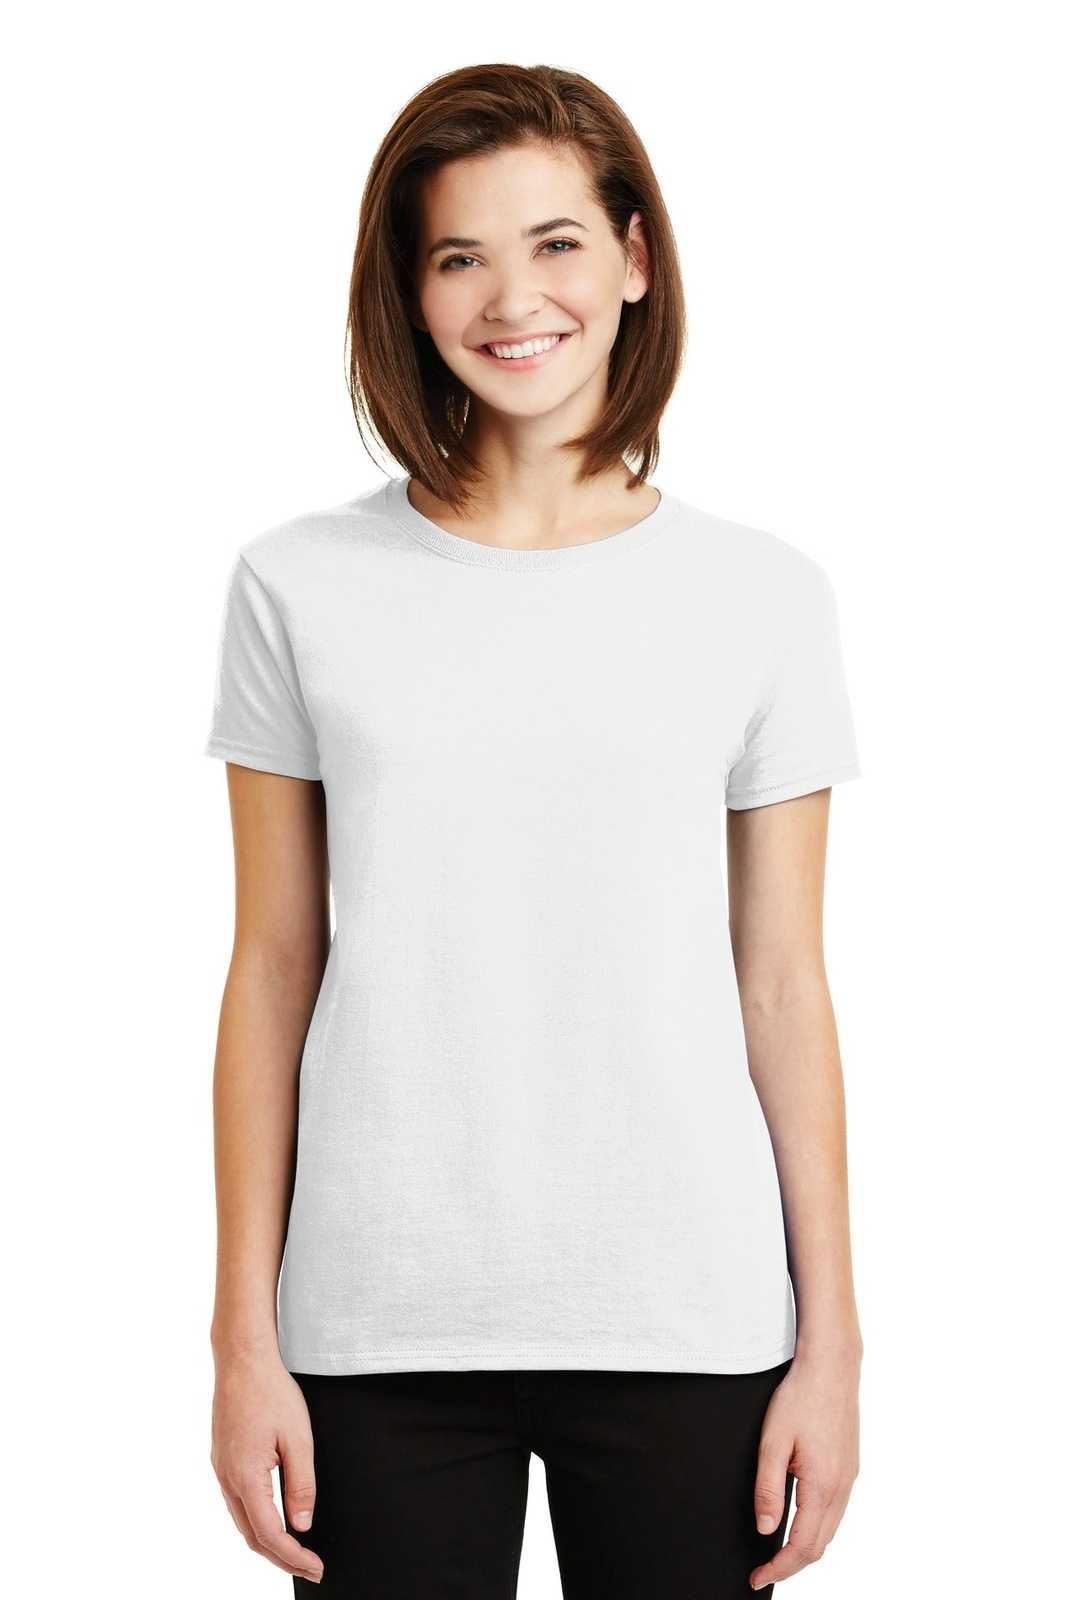 Gildan 2000L Ladies Ultra Cotton 100% Cotton T-Shirt - White - HIT a Double